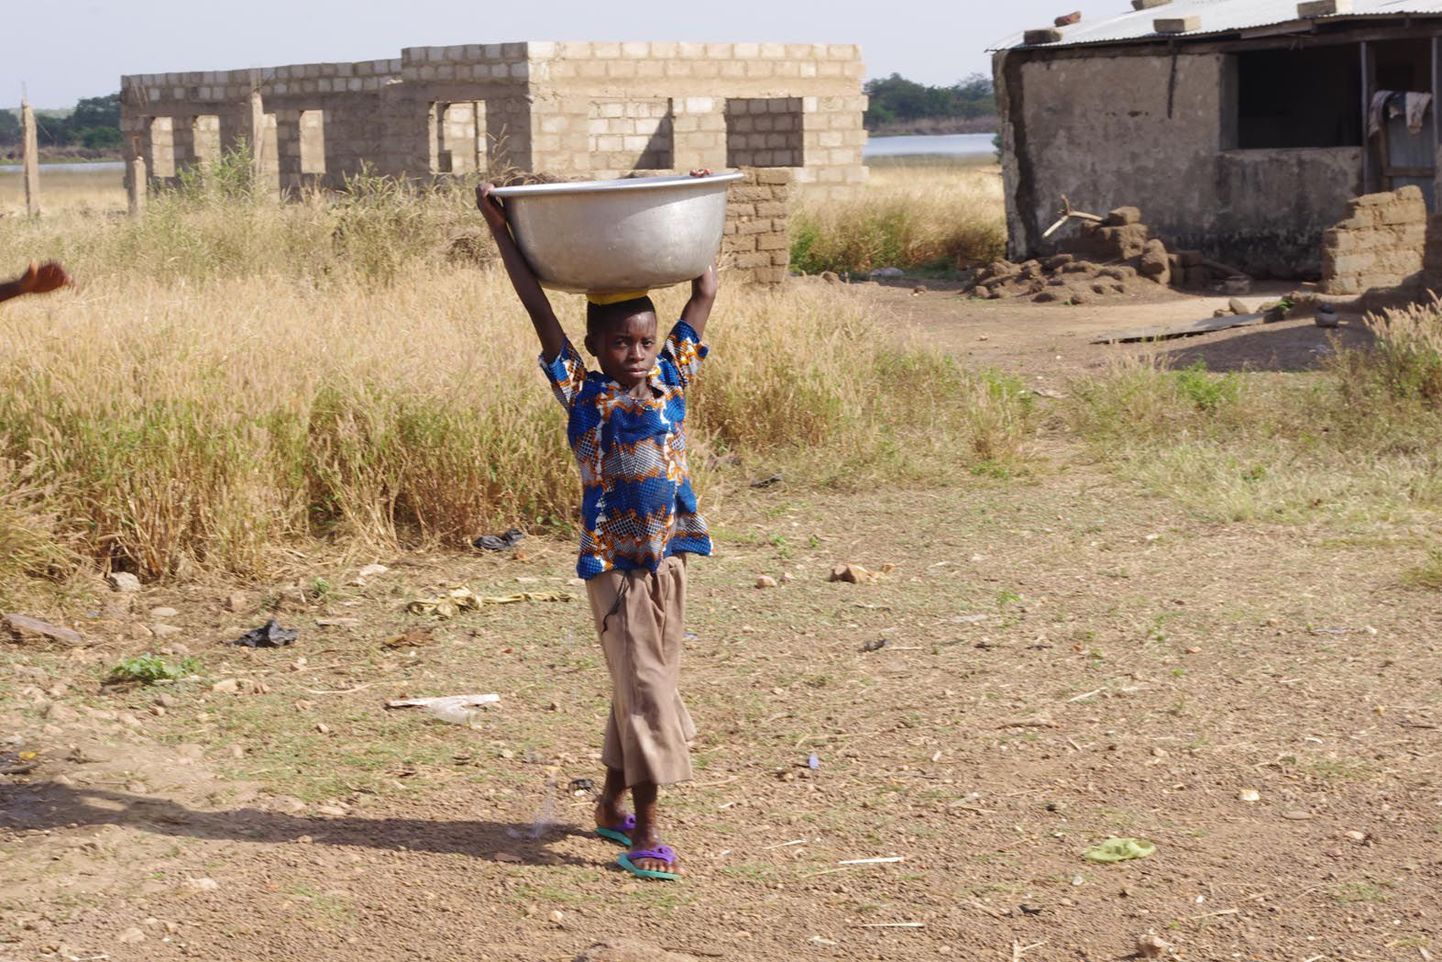 Ghanas on tavapärane, et lapsed peavad pärast kooli käima kodust mitme kilomeetri kaugusel puurkaevu juures vett pumpamas. Vesi toimetatakse enamasti koju suurte anumates, mida pea peal kantakse, kusjuures vilunumad ei pea umbes 35kilost anumat isegi kätega toetama.